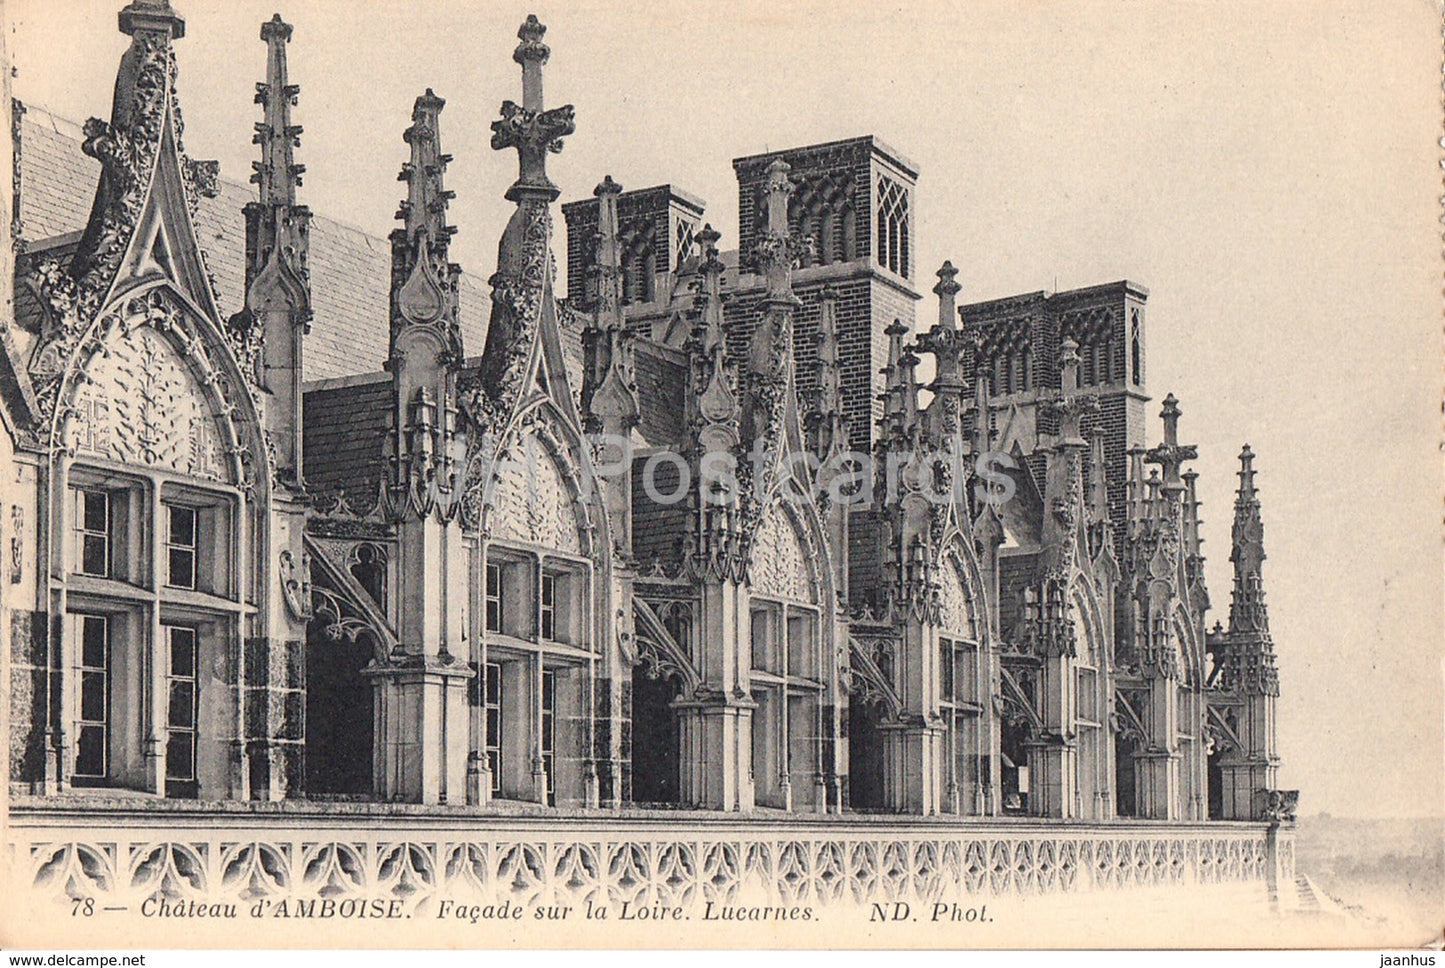 Chateau d' Amboise - Facade sur la Loire - Lucarnes - castle - 78 - old postcard - France - unused